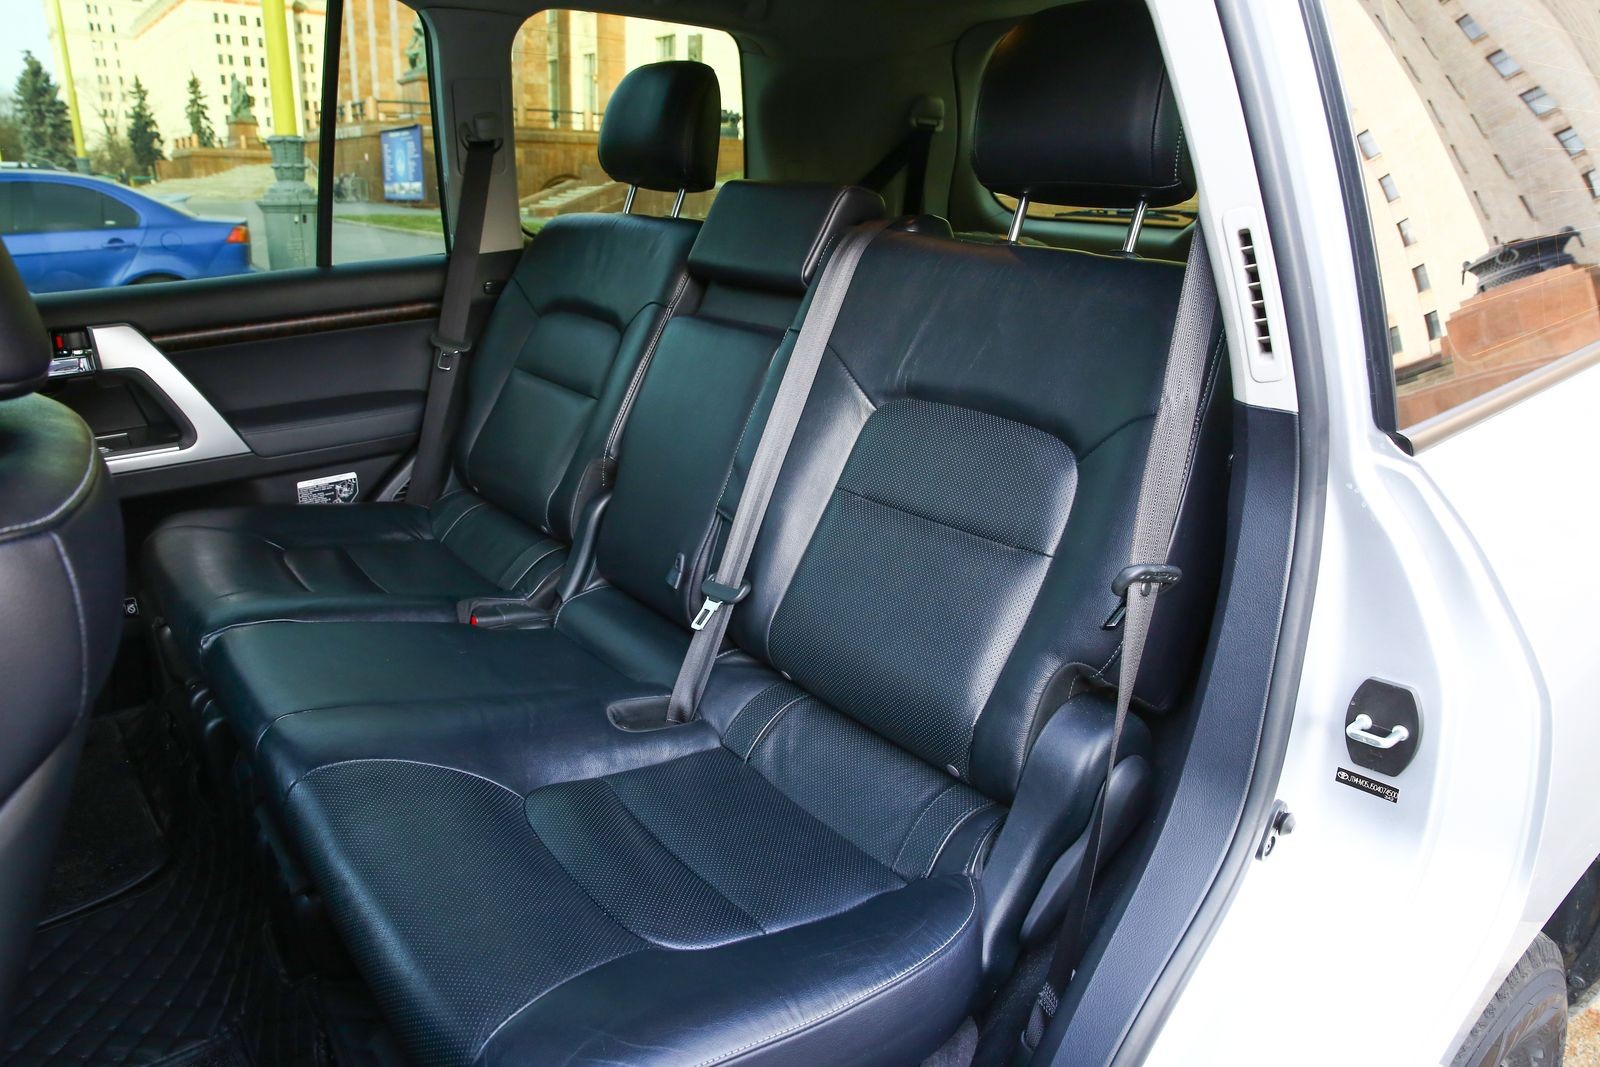 Toyota Land Cruiser 200 с пробегом: салон, тормоза, подвеска - – автомобильный журнал